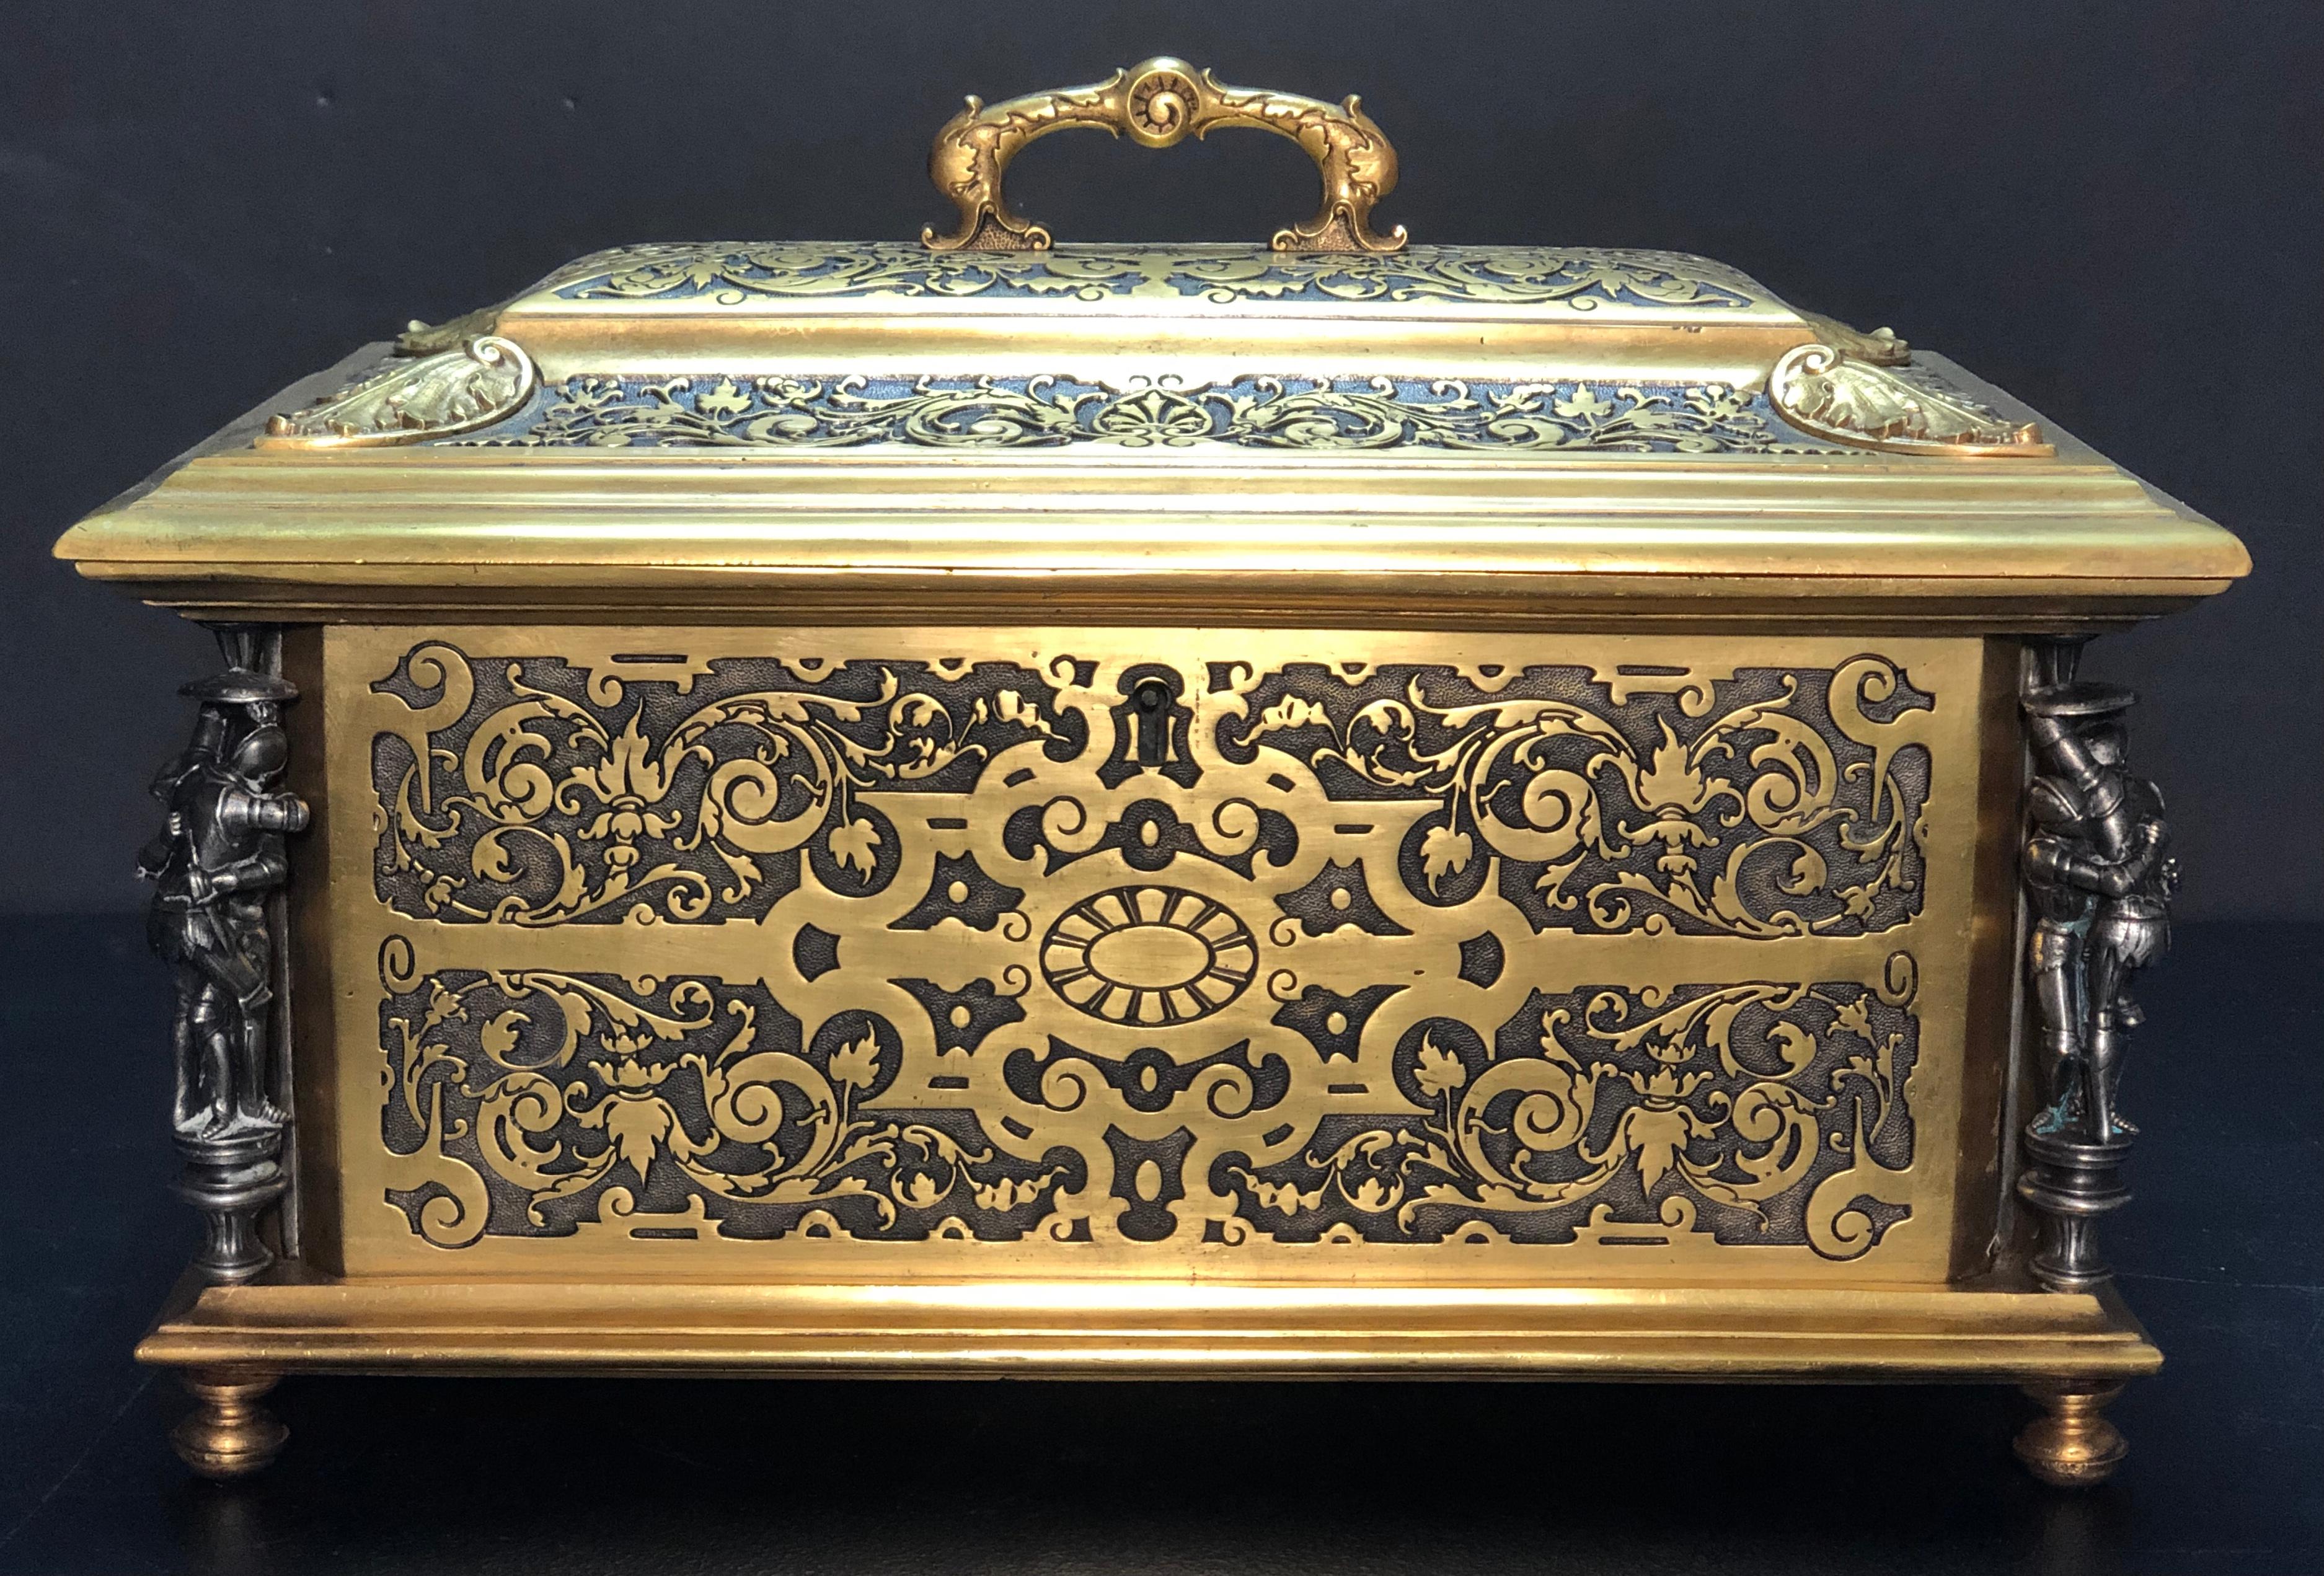 Grande boîte de table en bronze doré et argenté du XIXe siècle. Boîte à bijoux en bronze doré et argenté finement moulé, de style néo-Renaissance, avec doublure intérieure en velours touffeté. Quatre coins avec des chevaliers en armure qui se